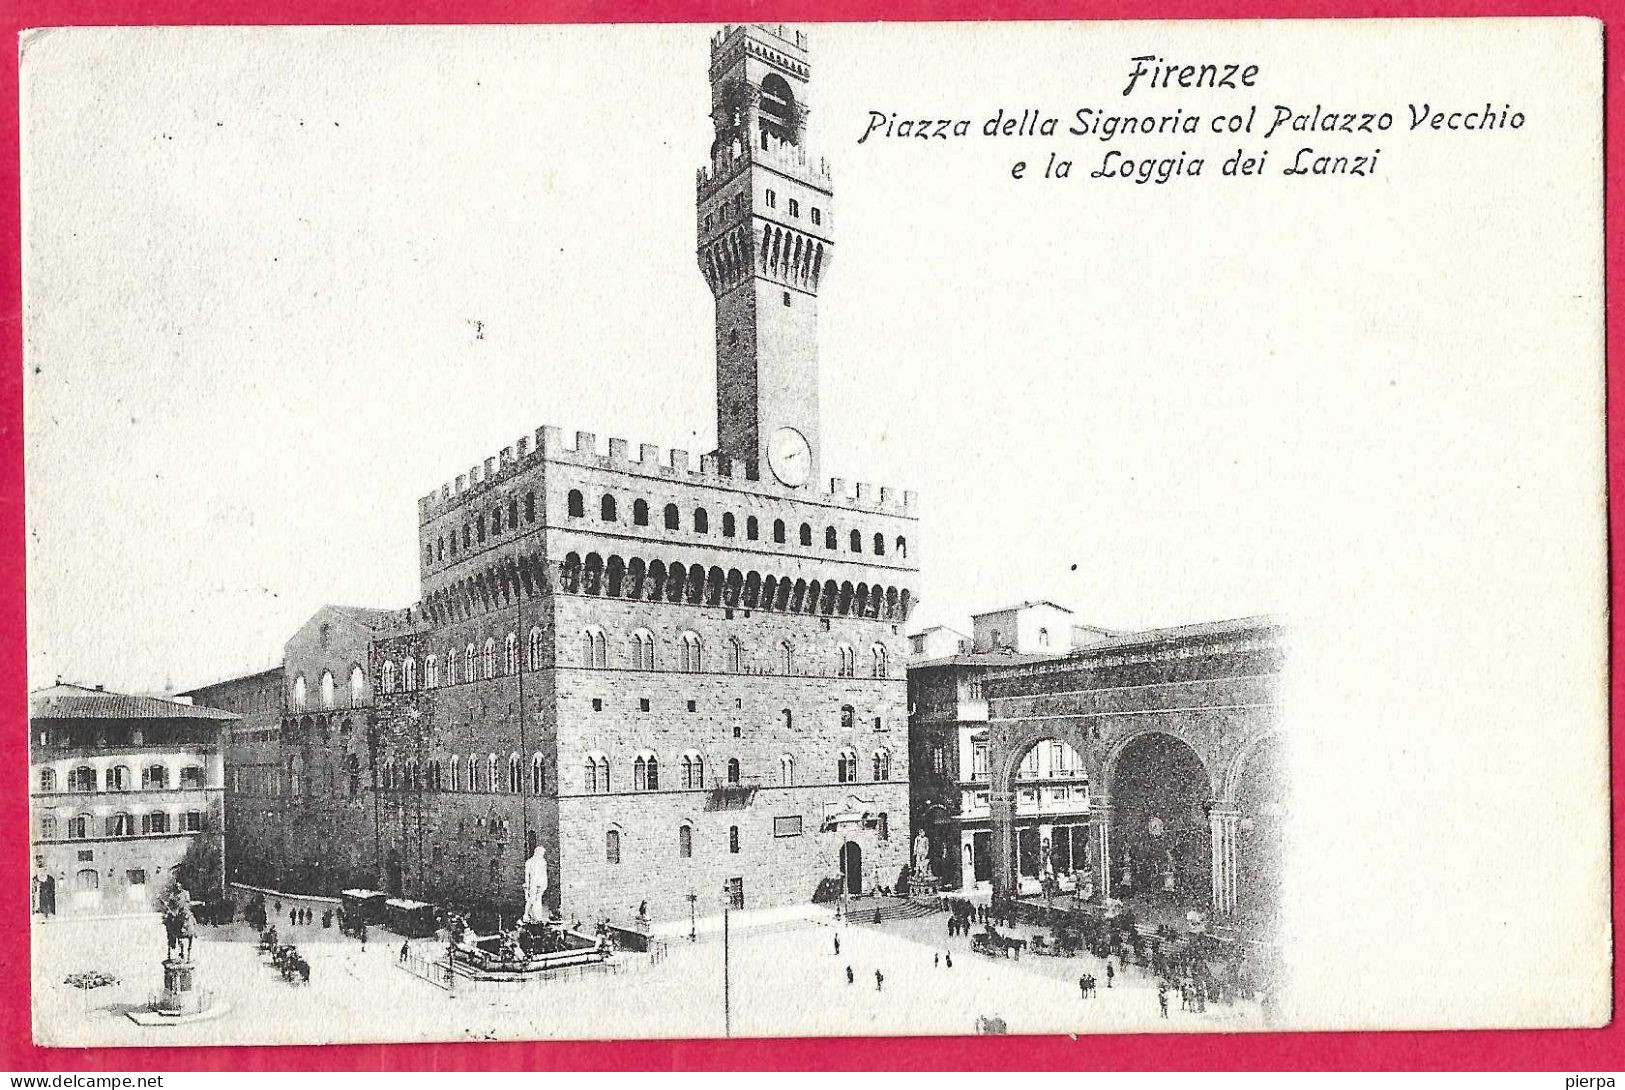 FIRENZE - PIAZZA DELLA SIGNORIA E PALAZZO VECCHIO - FORMATO PICCOLO - EDIZ. GIUSTI FIRENZE - VIAGGIATA 1908 - Firenze (Florence)